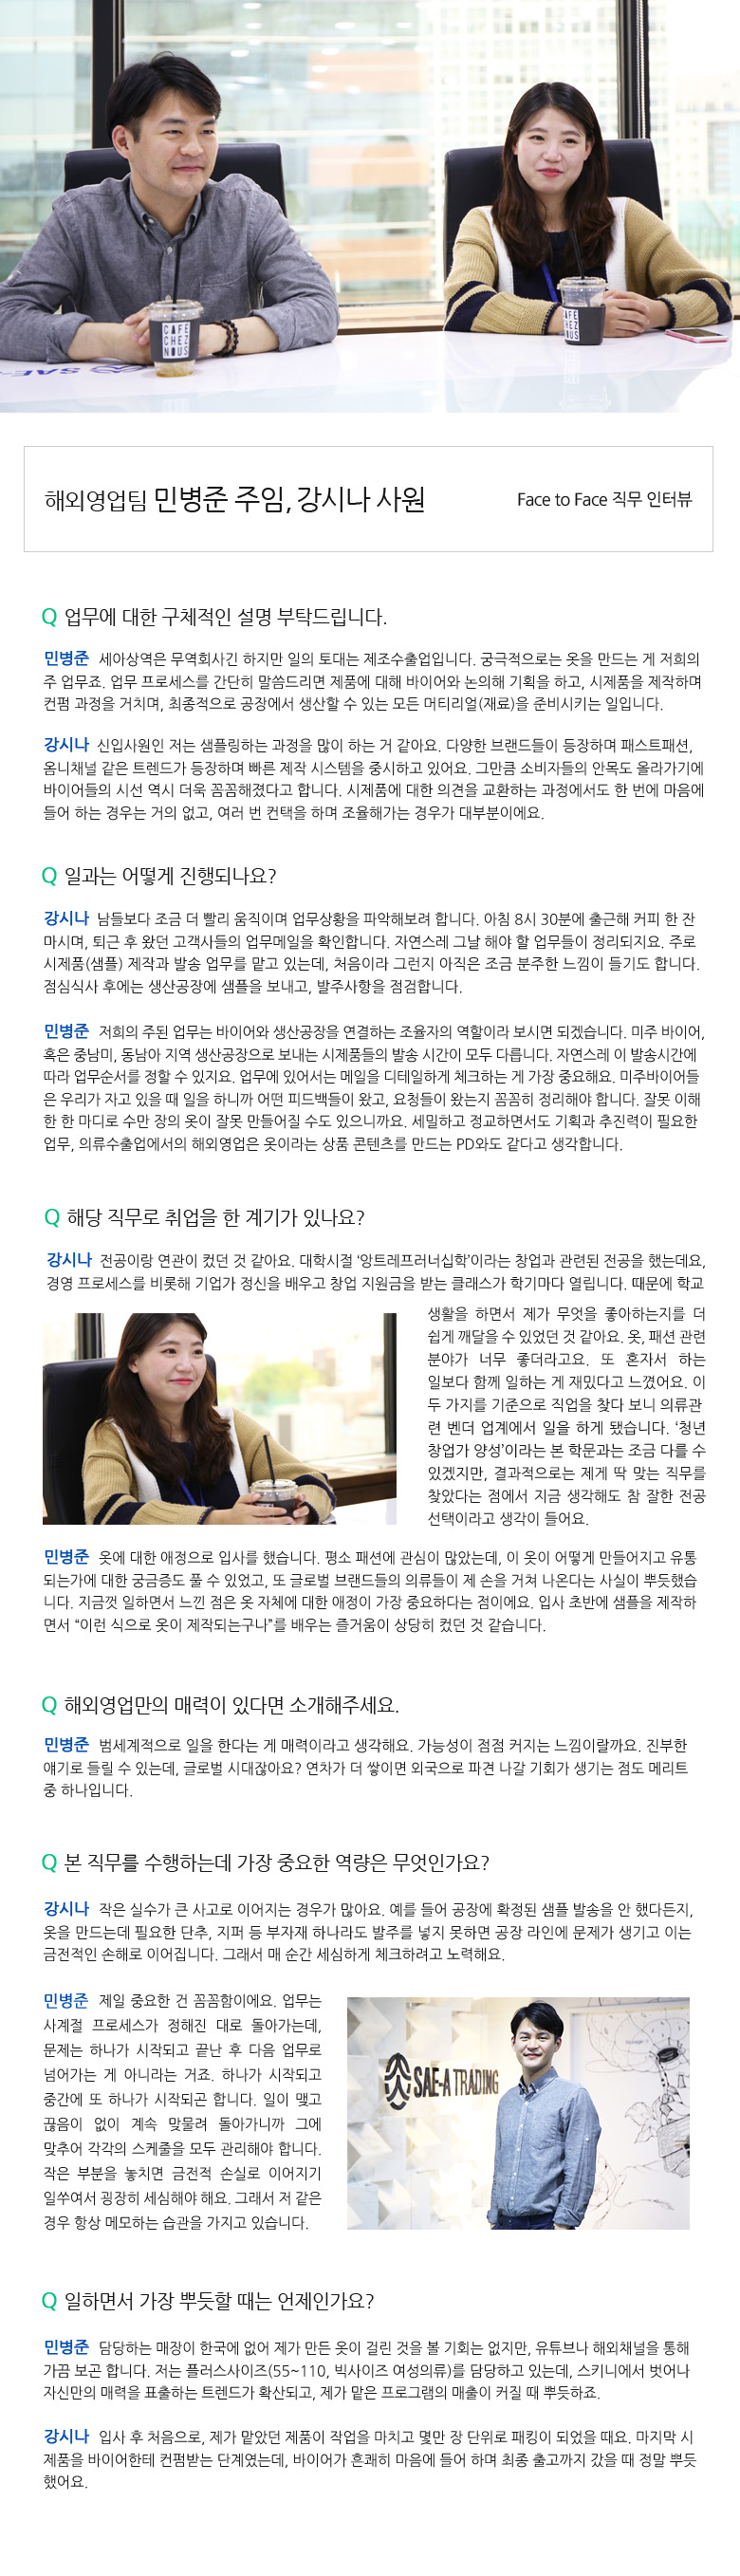 해외영업팀 민병준 주임 & 강시나 사원